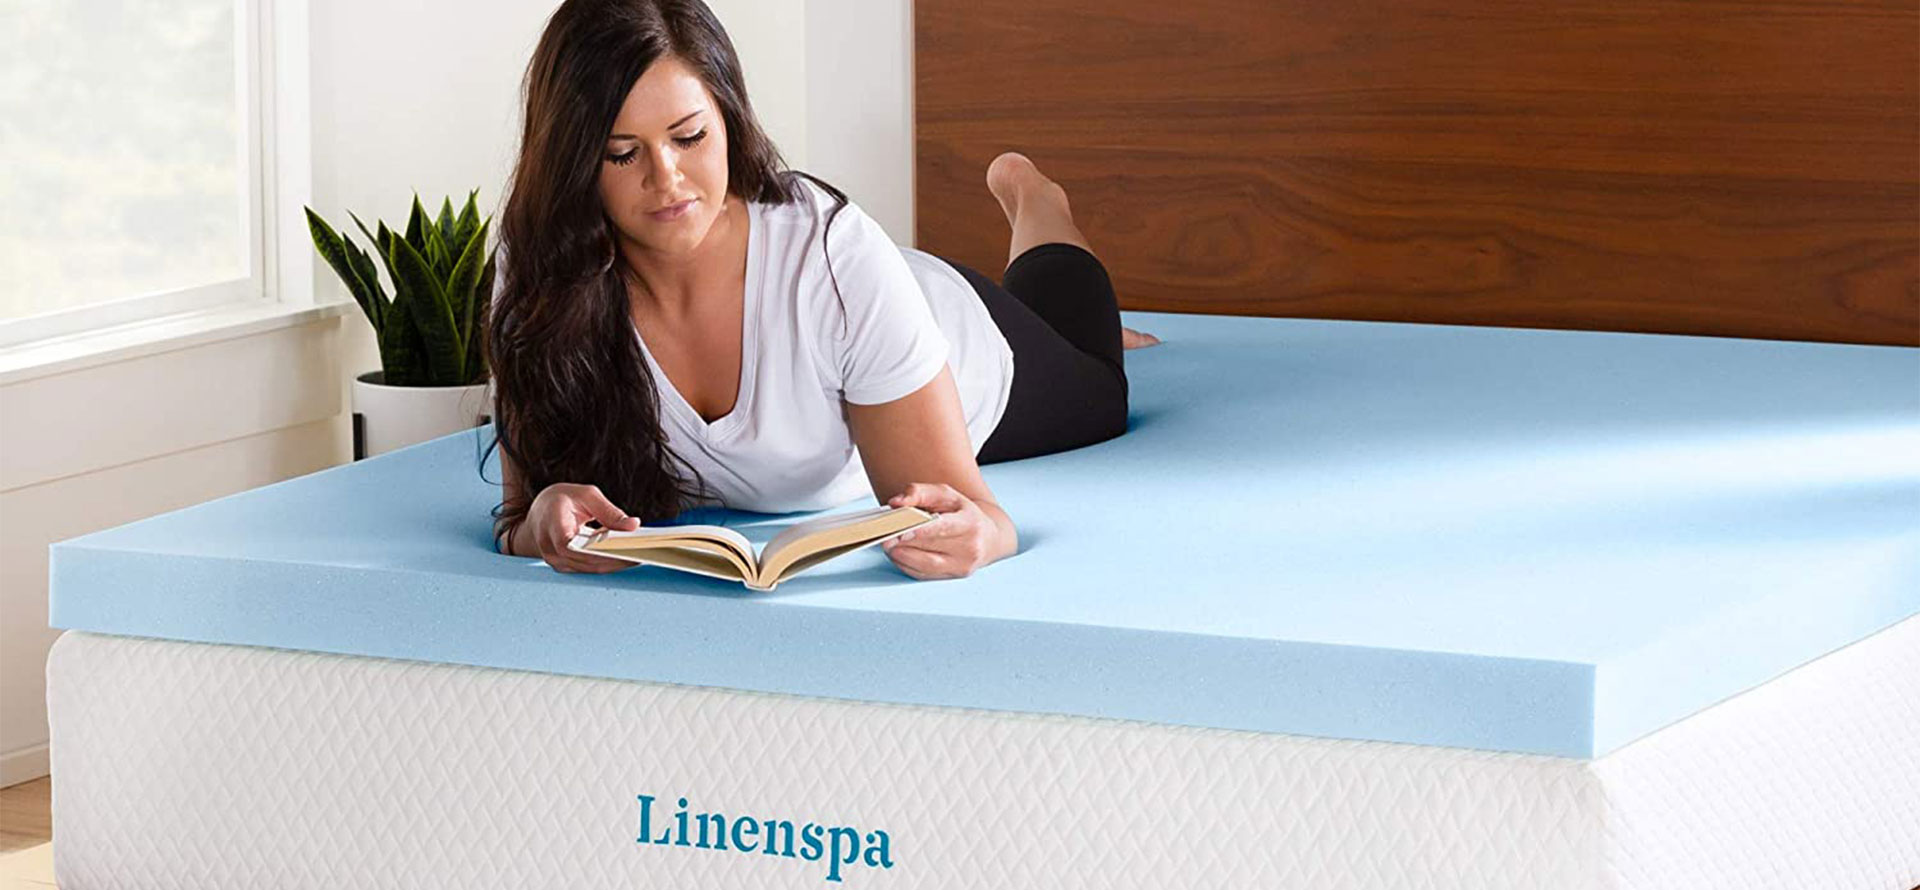 Linenspa mattress women on bed.